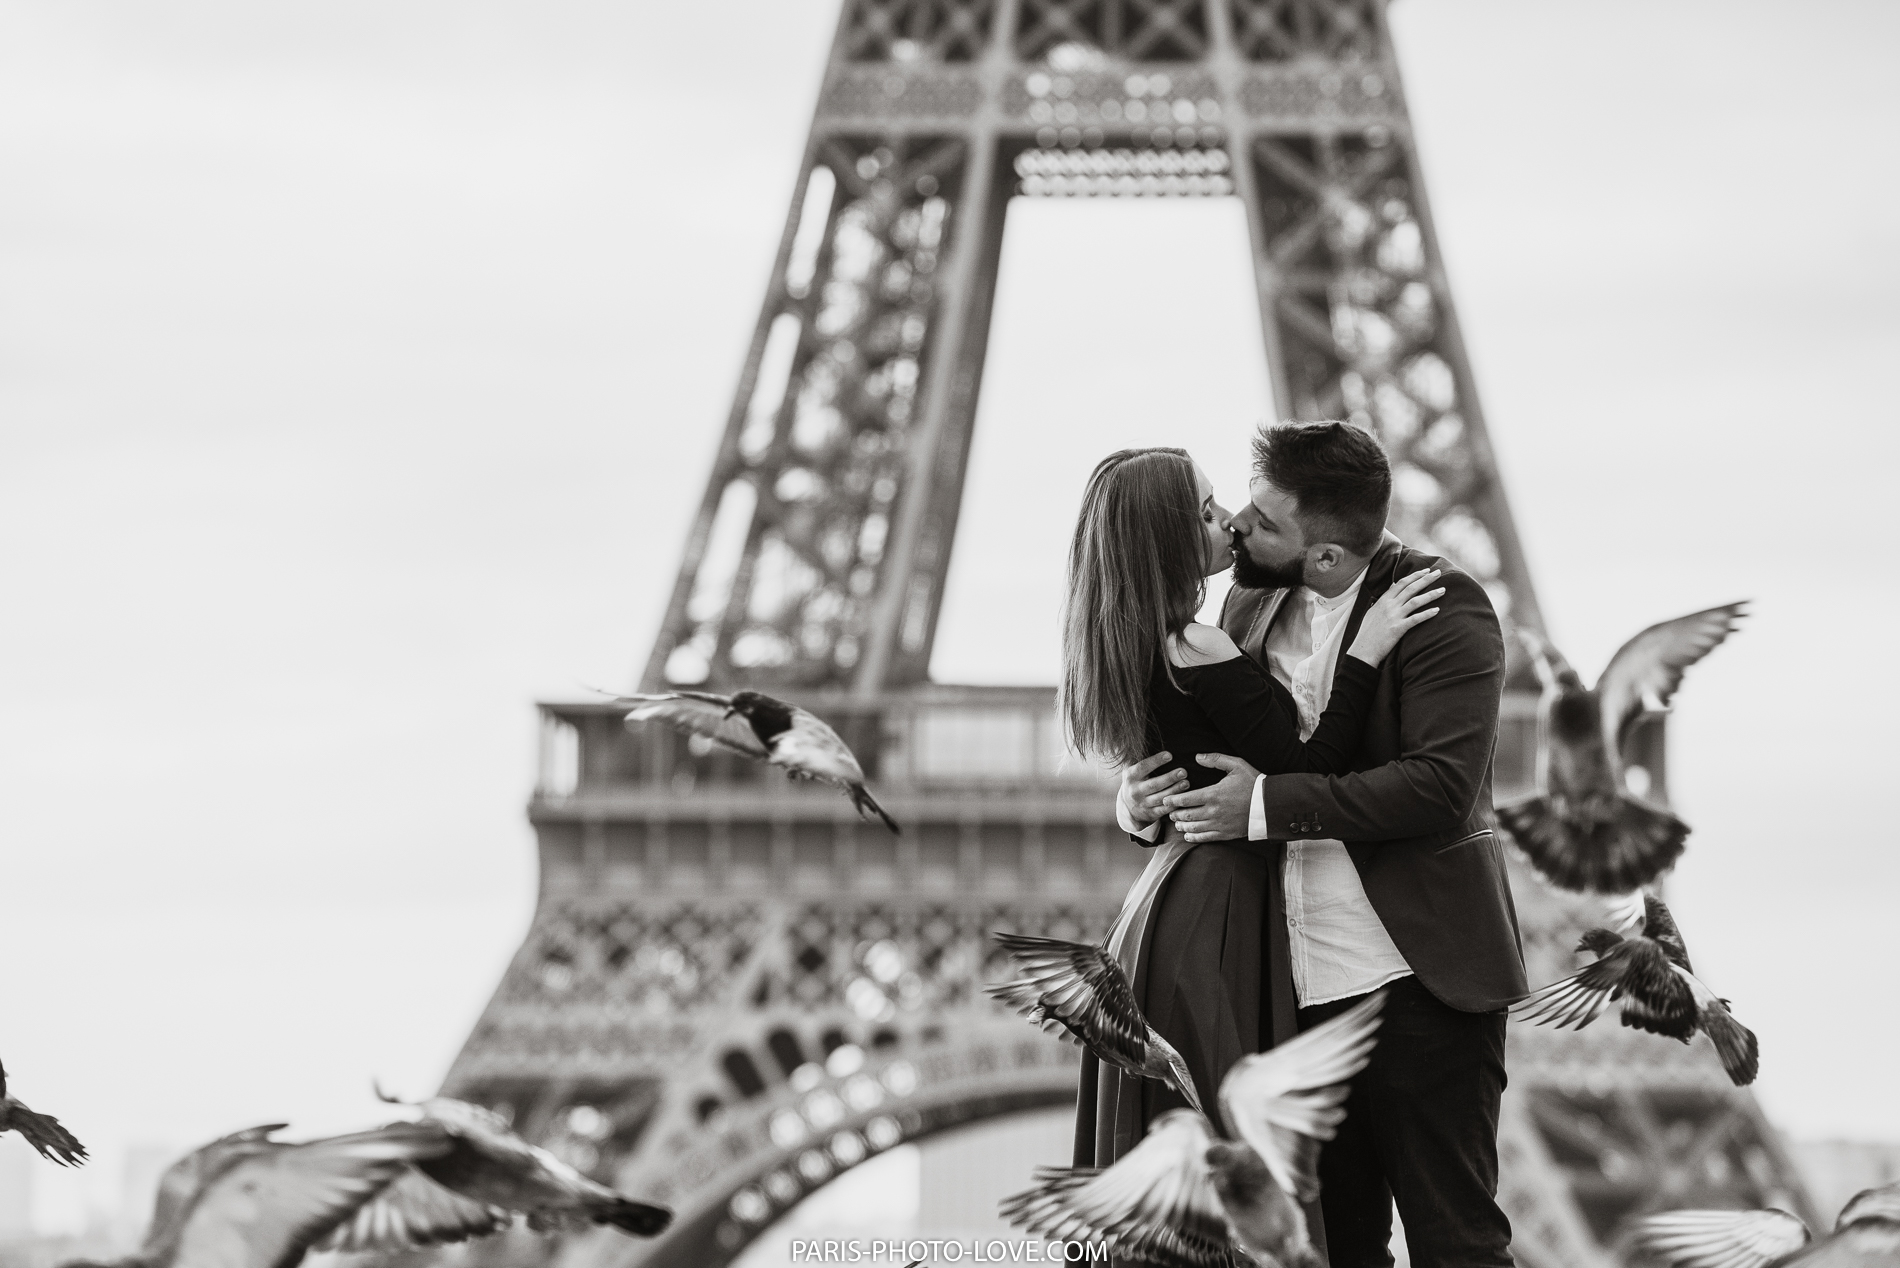 Влюбленные и башня. Влюбленные в Париже. Фотосессия в Париже. Париж романтика.